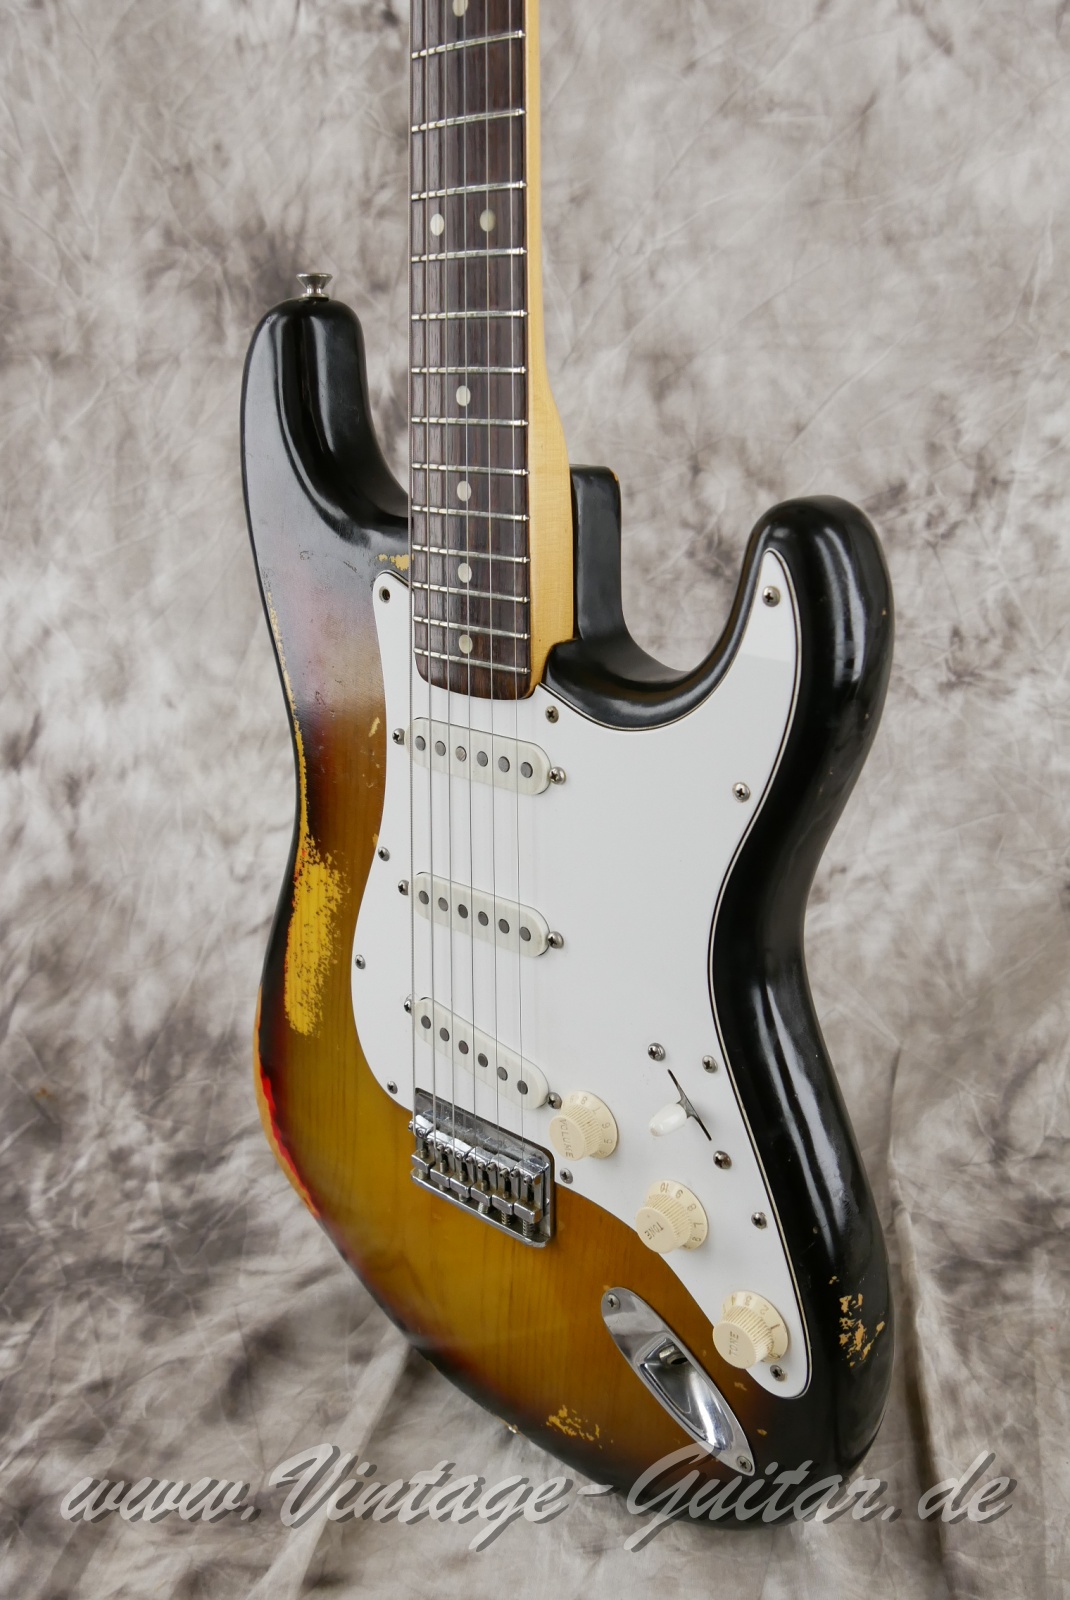 Fender-Stratocaster-Hardtail-1974c.-sunburst-010.jpg